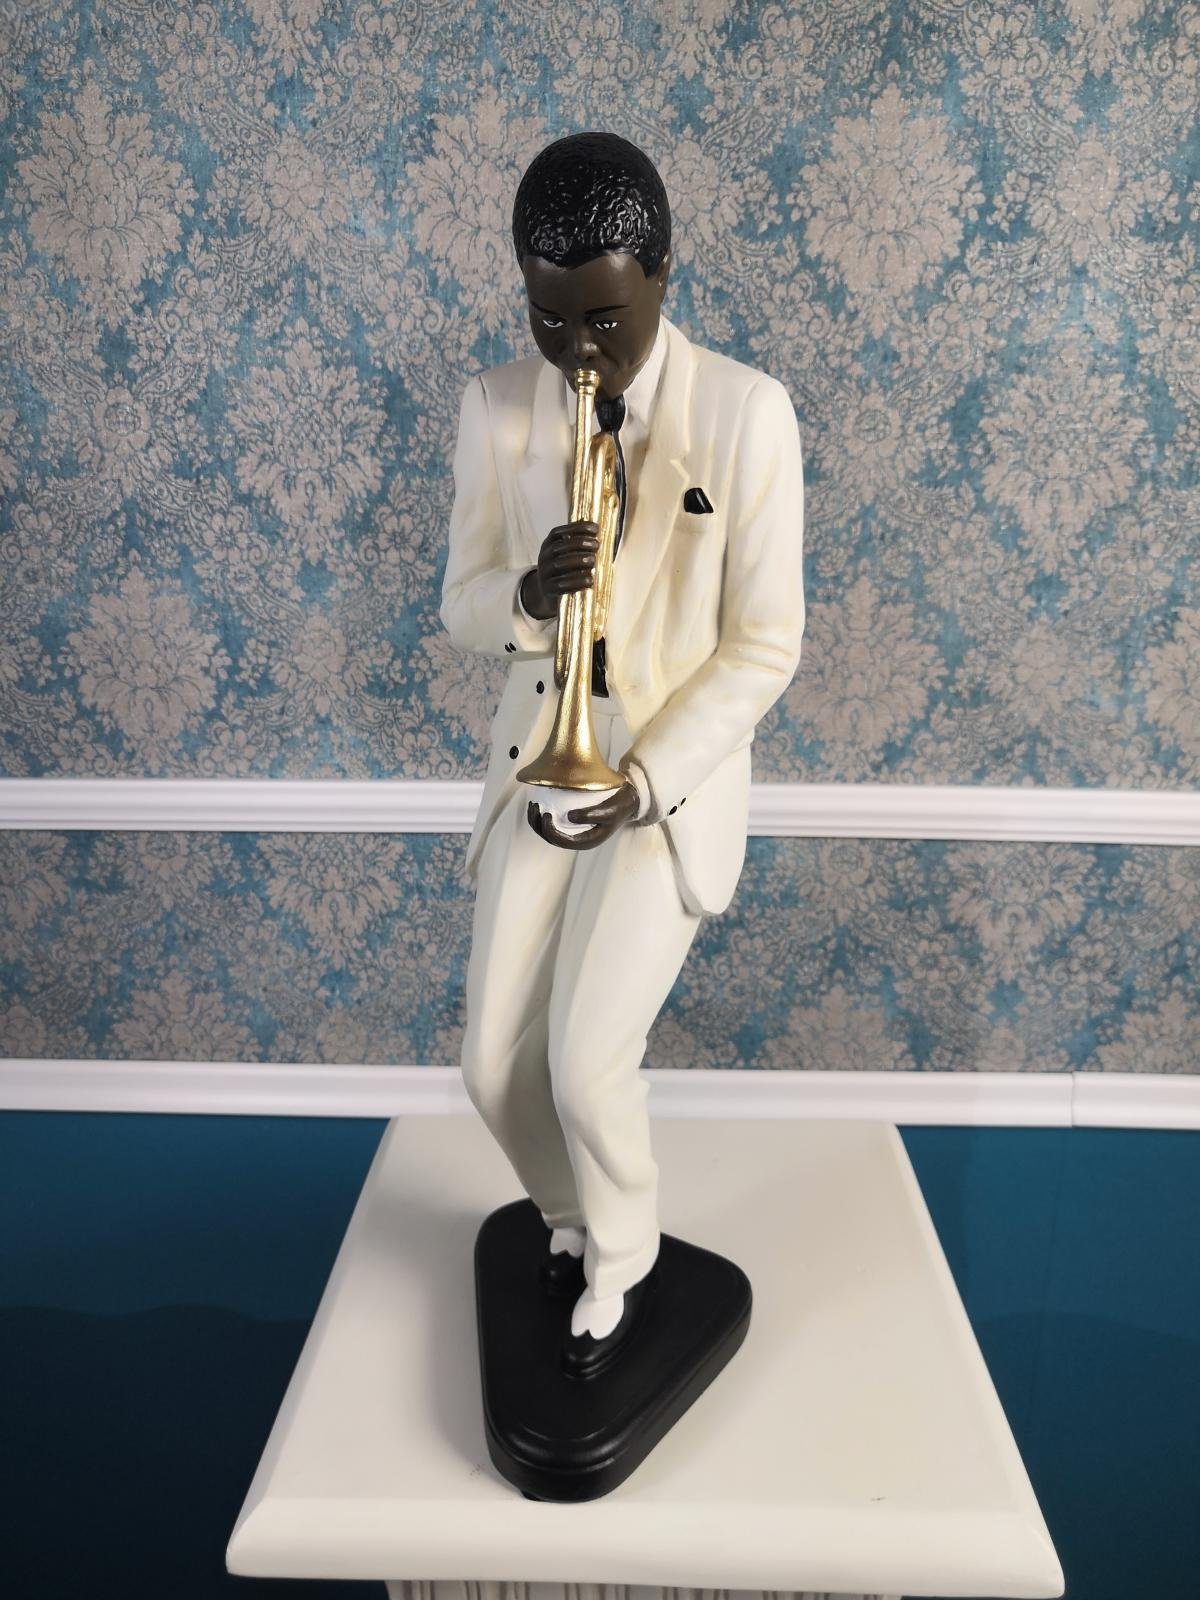 JVmoebel Skulptur Design Jazz Musik Figur Statue Skulptur Figuren Skulpturen Deko